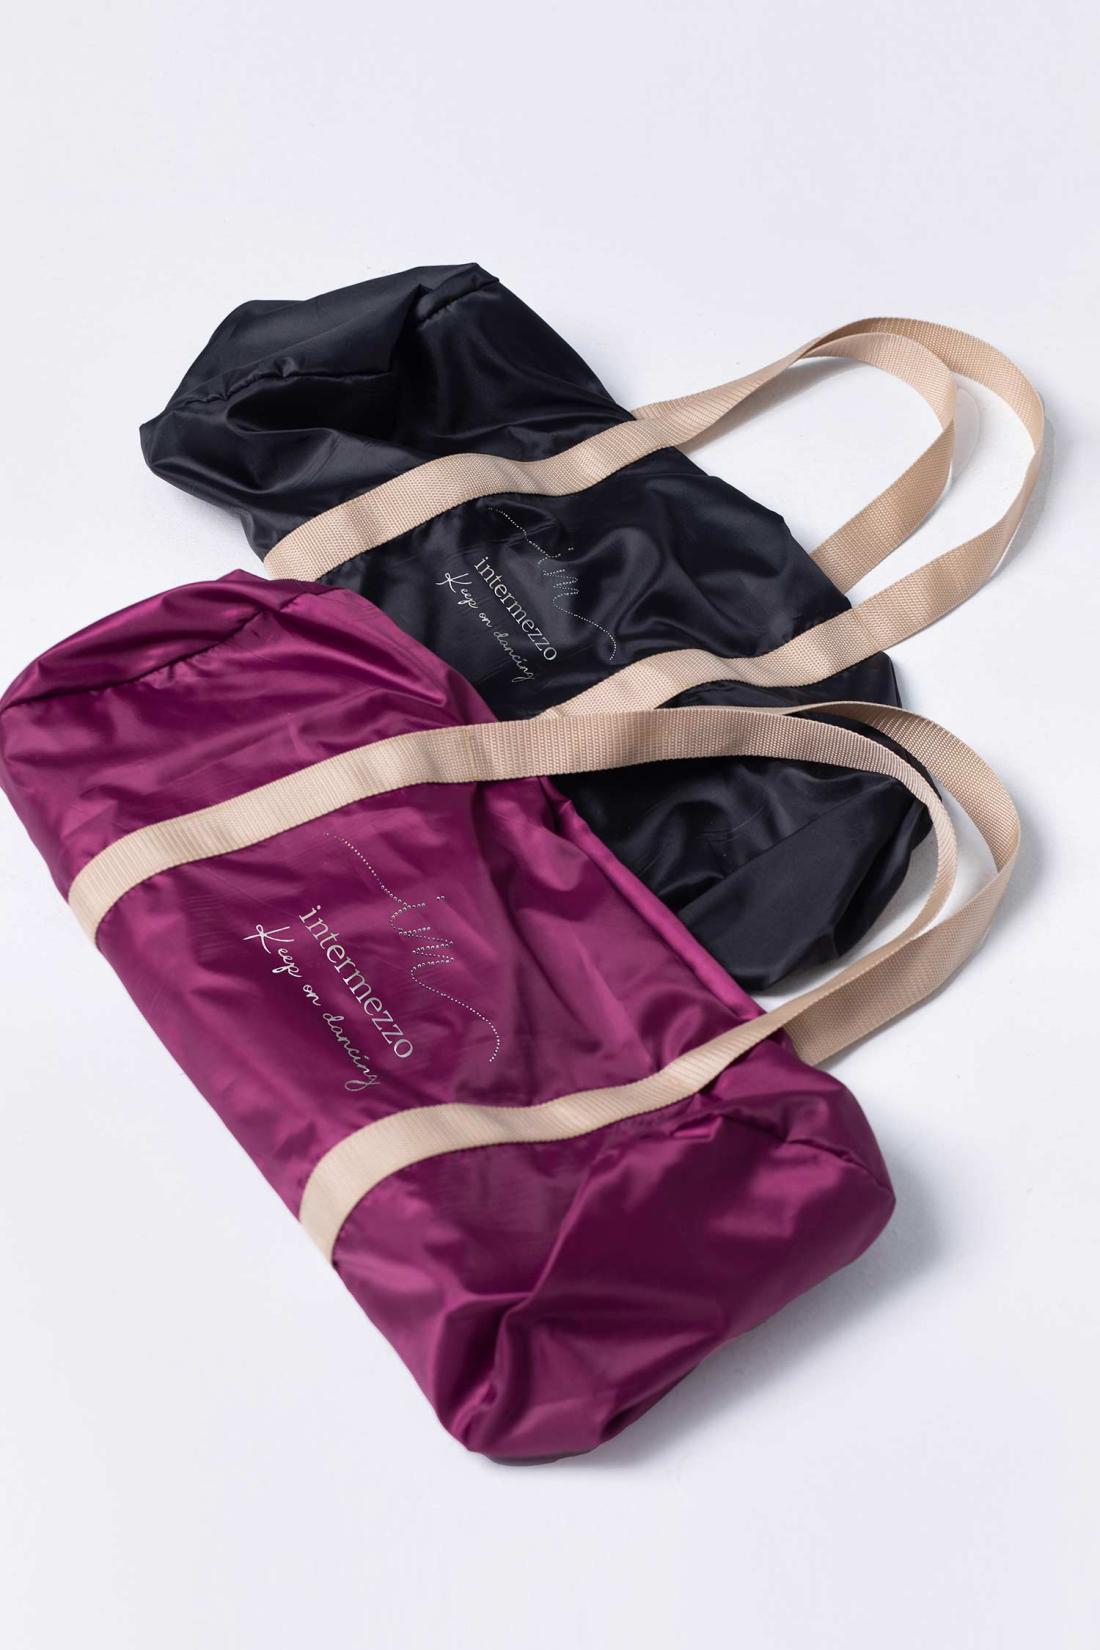 Bolso deportiva tejido no transpirable con bolsillo interior de Intermezzo danza ballet